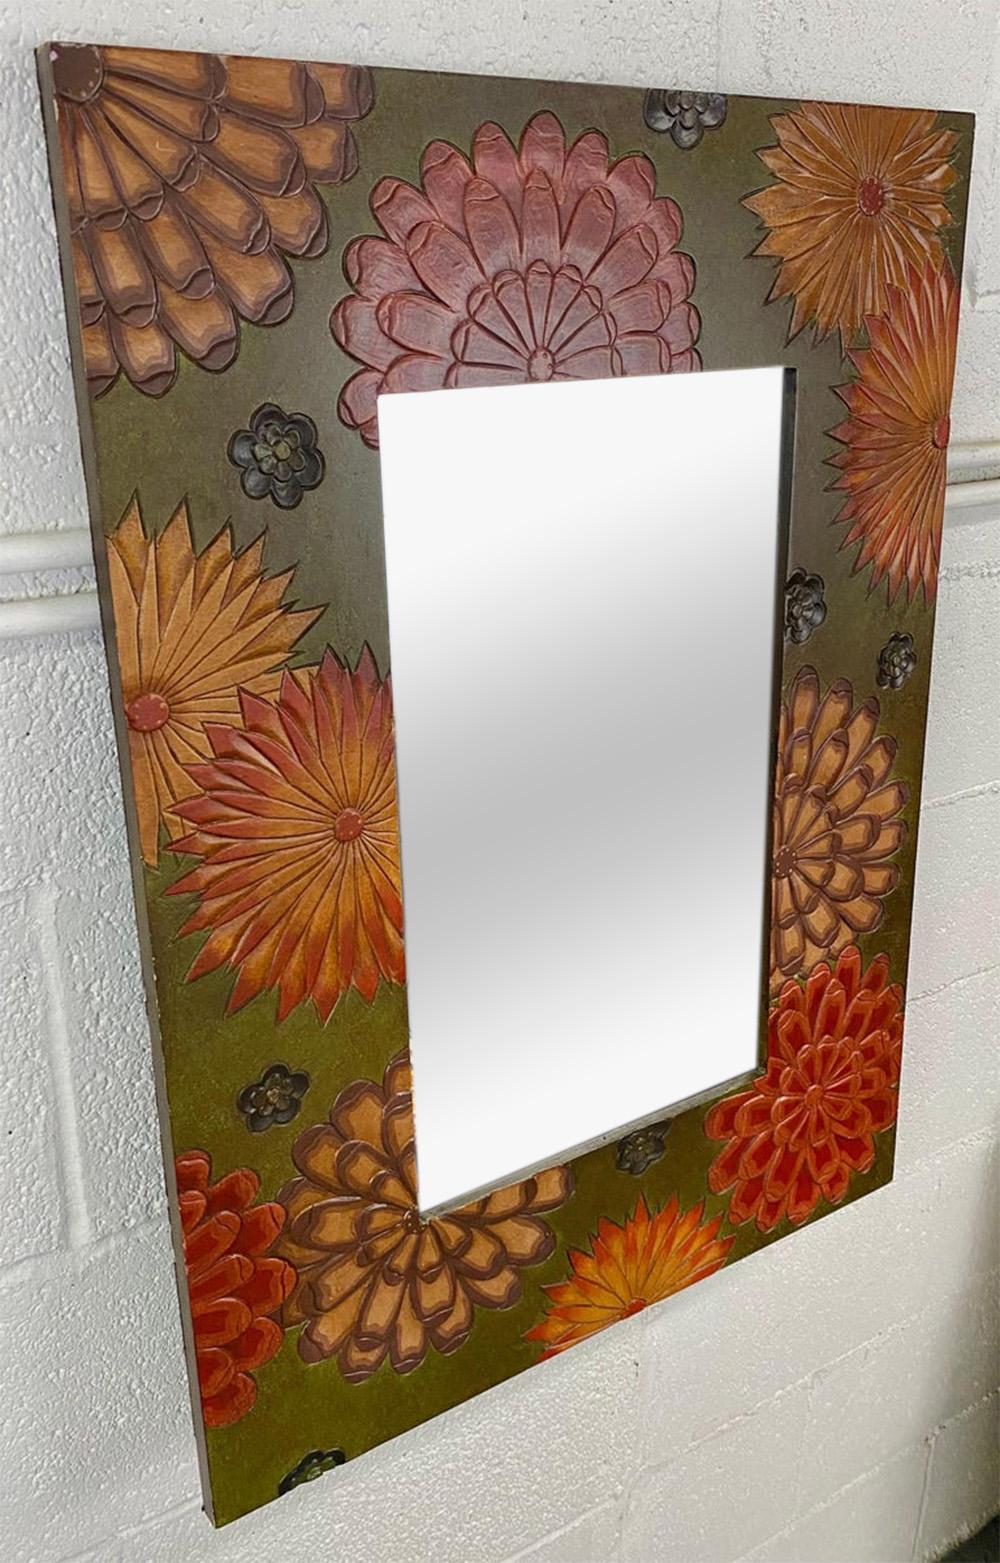 Un beau mur ou une coiffeuse Boho Chic  miroir. Ce miroir élégant est composé d'un cadre sculpté à la main présentant des motifs de fleurs de soleil sur un fond vert. Le ton terreux du cadre ajoute de la classe et de l'élégance au mineur.  le miroir